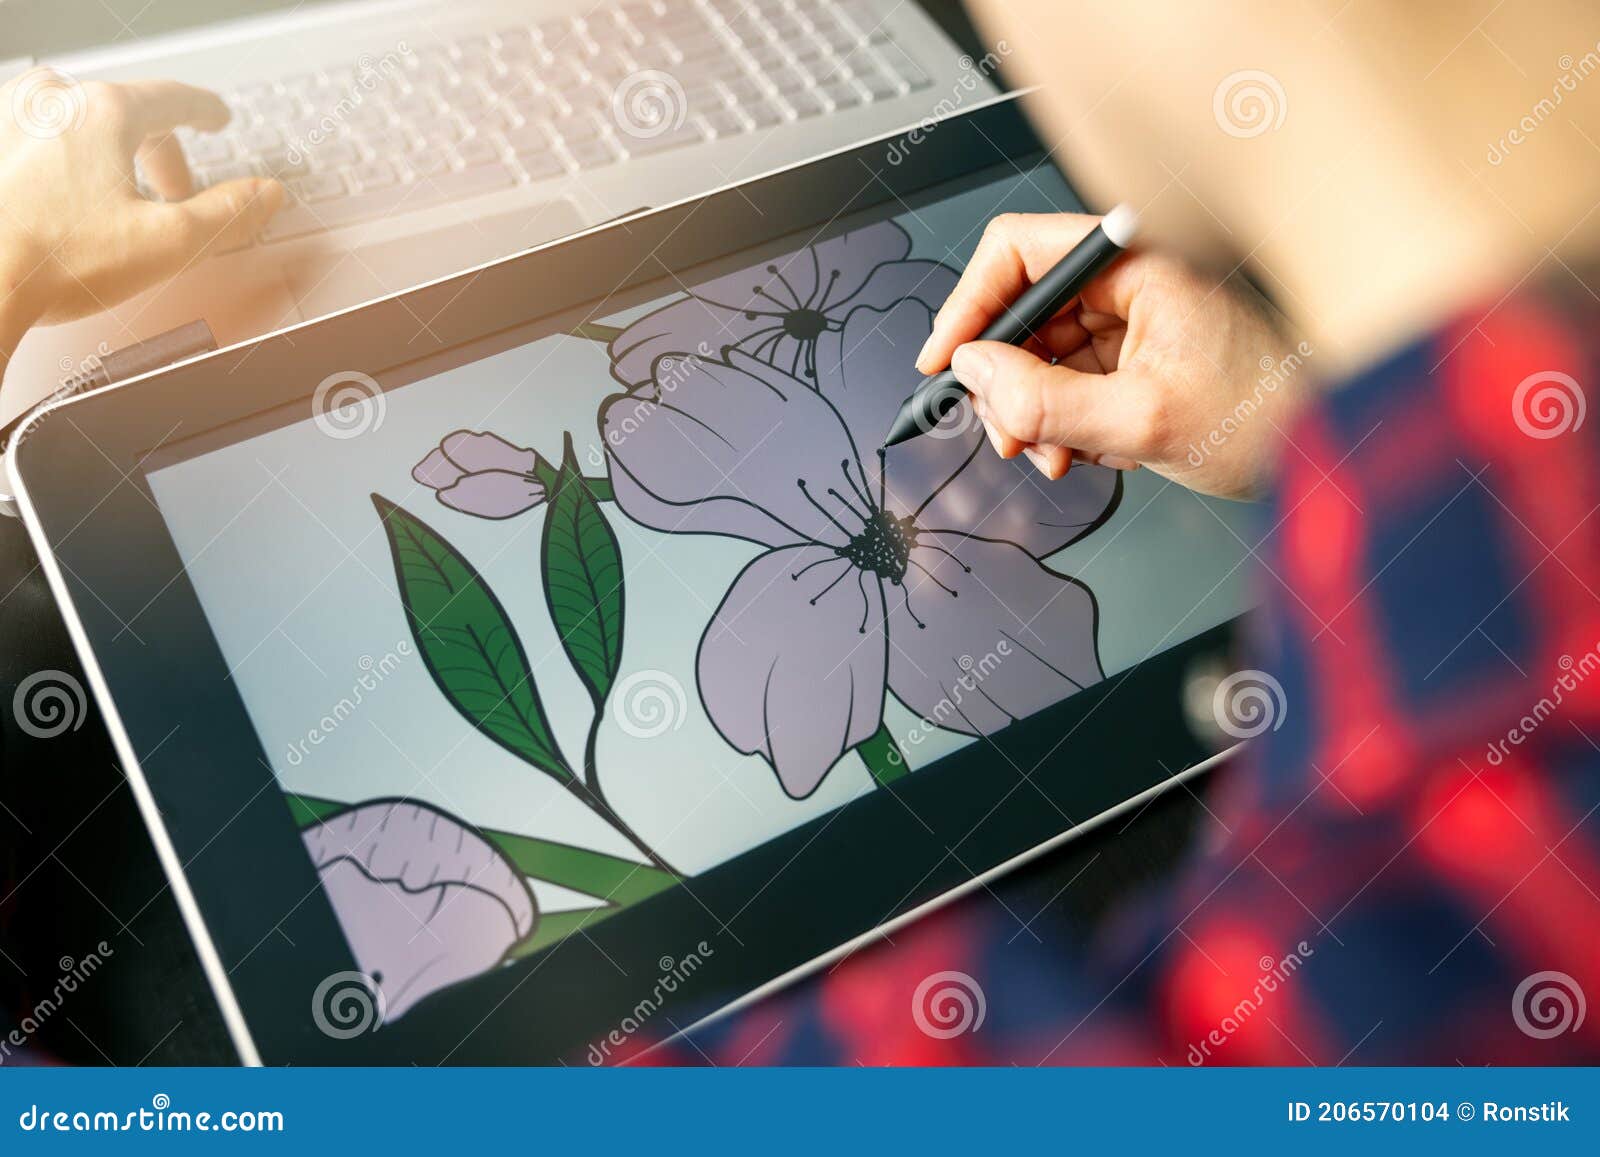 Ilustrador Diseñador Gráfico Ilustración Flor En De Dibujo Foto de archivo - Imagen de mano, digital: 206570104